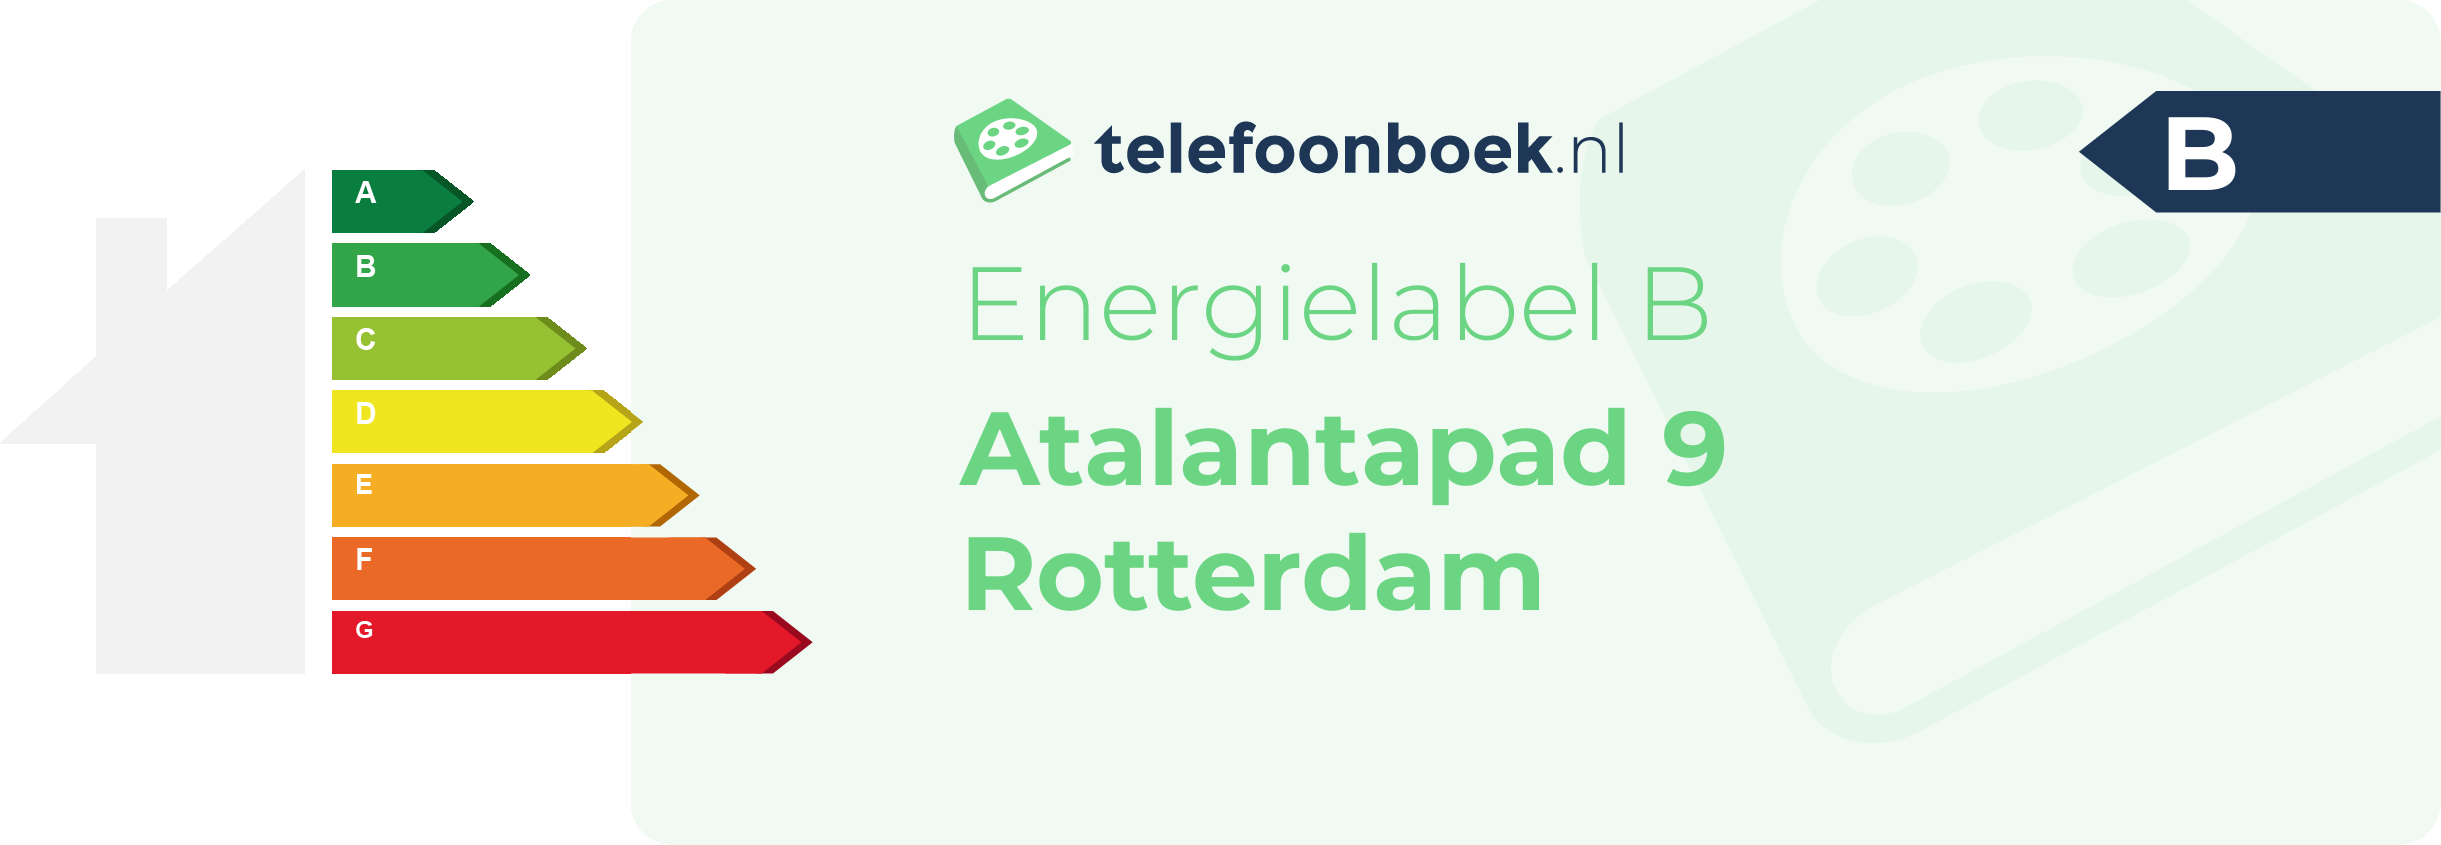 Energielabel Atalantapad 9 Rotterdam